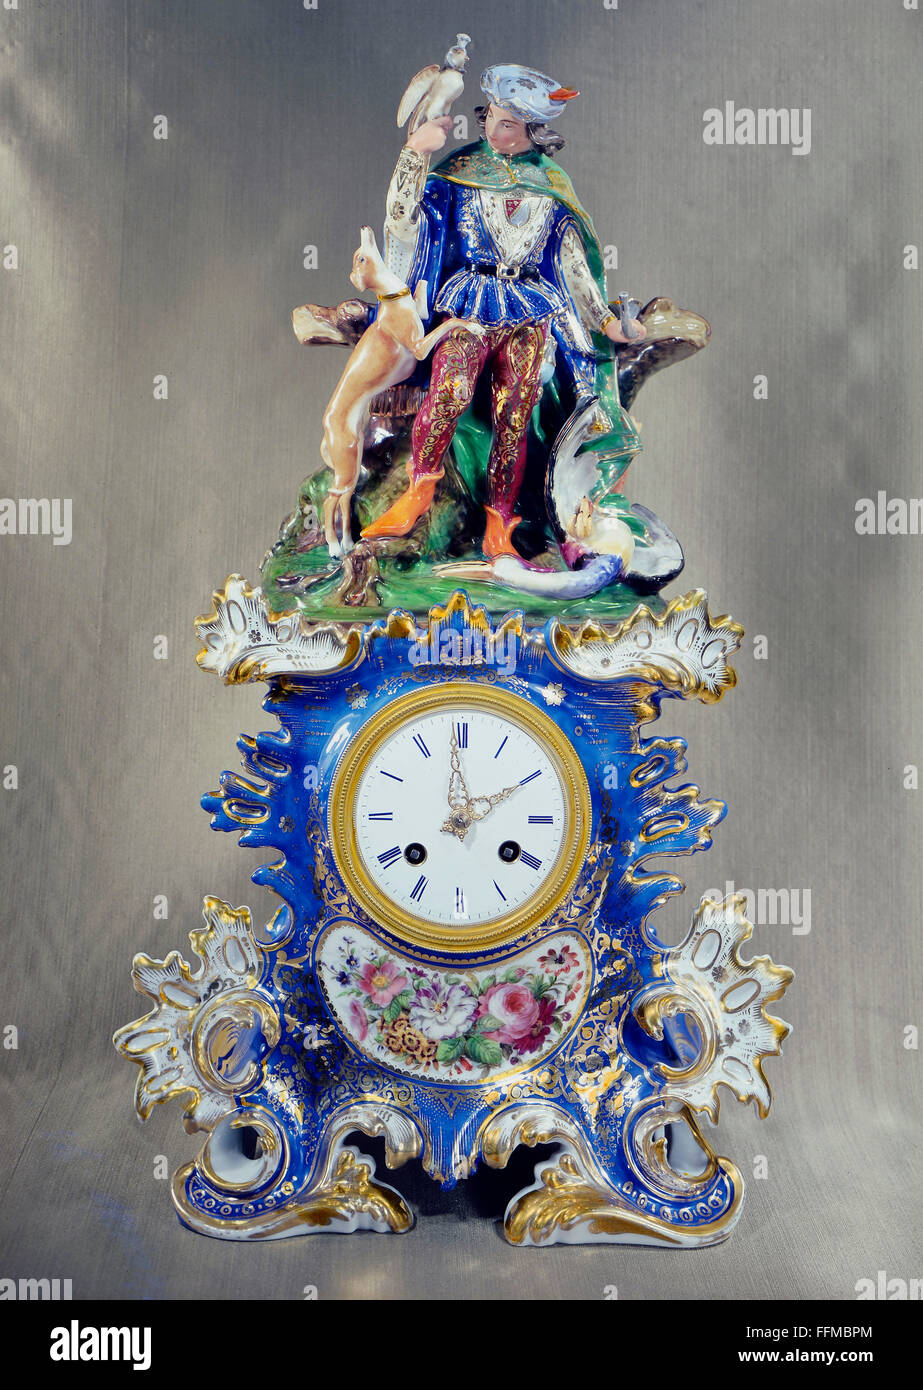 Uhren, Halteruhr, Falkner mit Jagdhund, Porzellan, bemalt, Sevres, Paris,  um 1860, Zusatzrechte-Clearences-nicht vorhanden Stockfotografie - Alamy